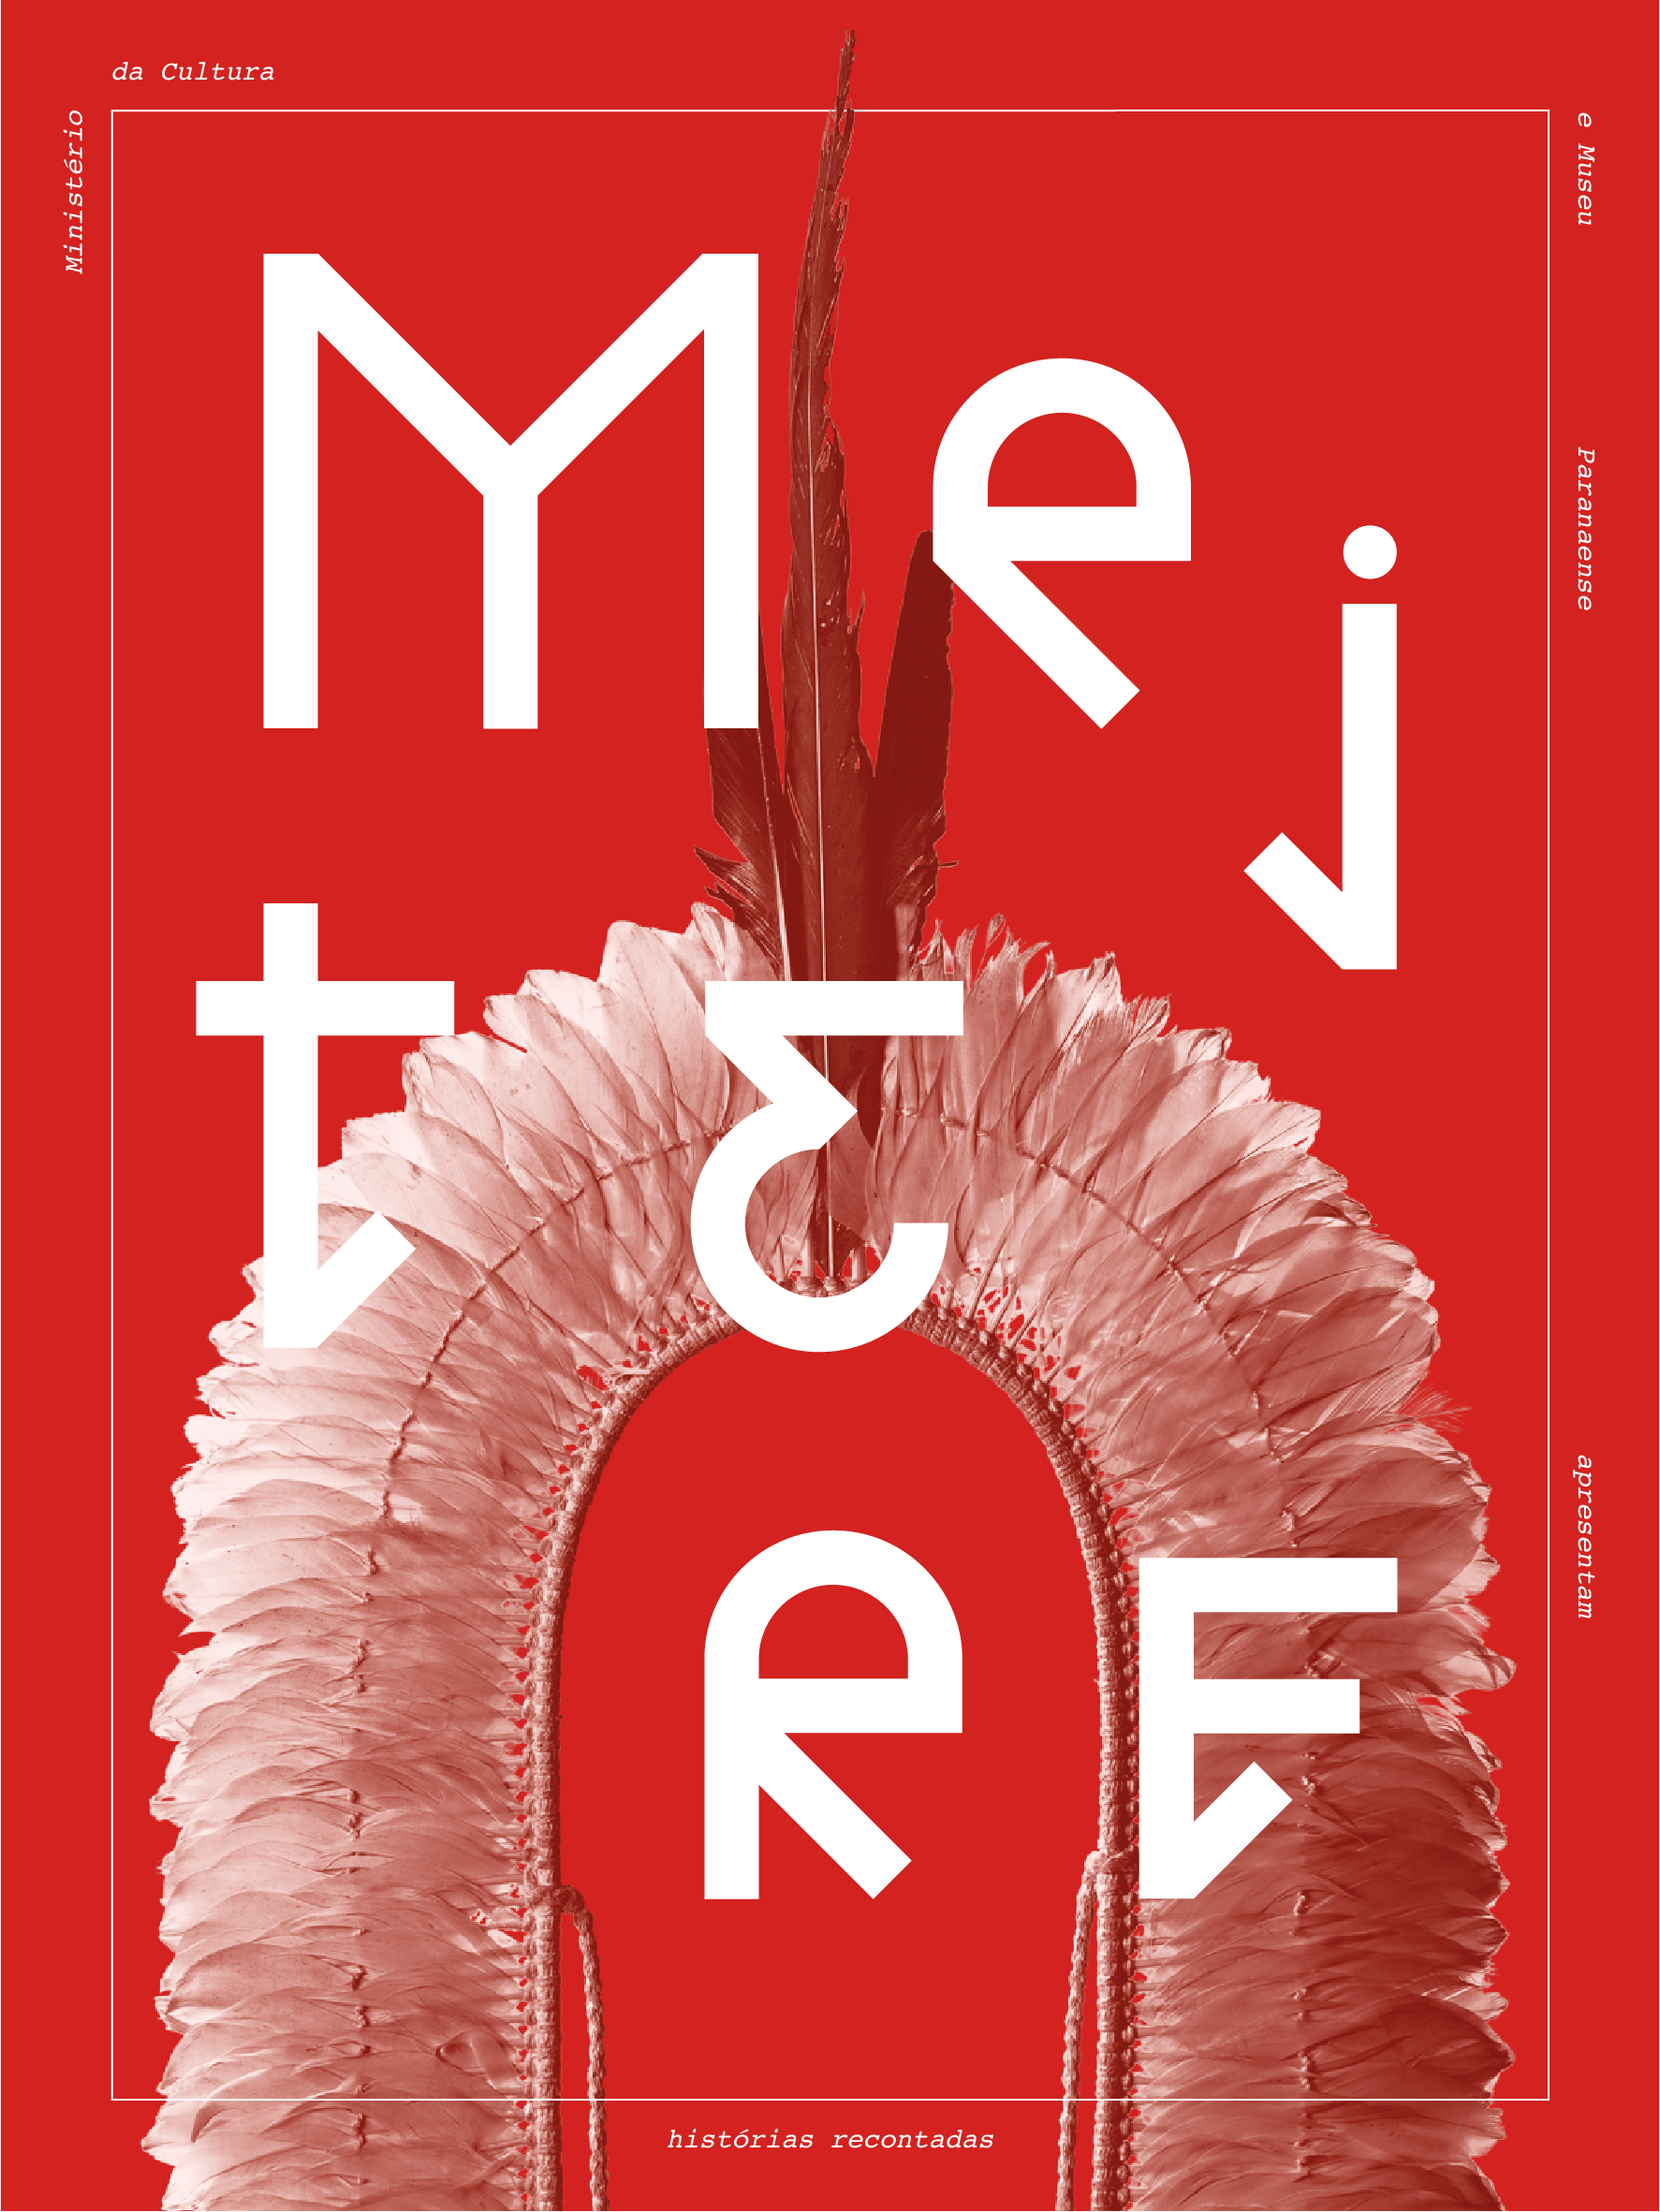 Capa do jornal da exposição "Mejtere: histórias recontadas".